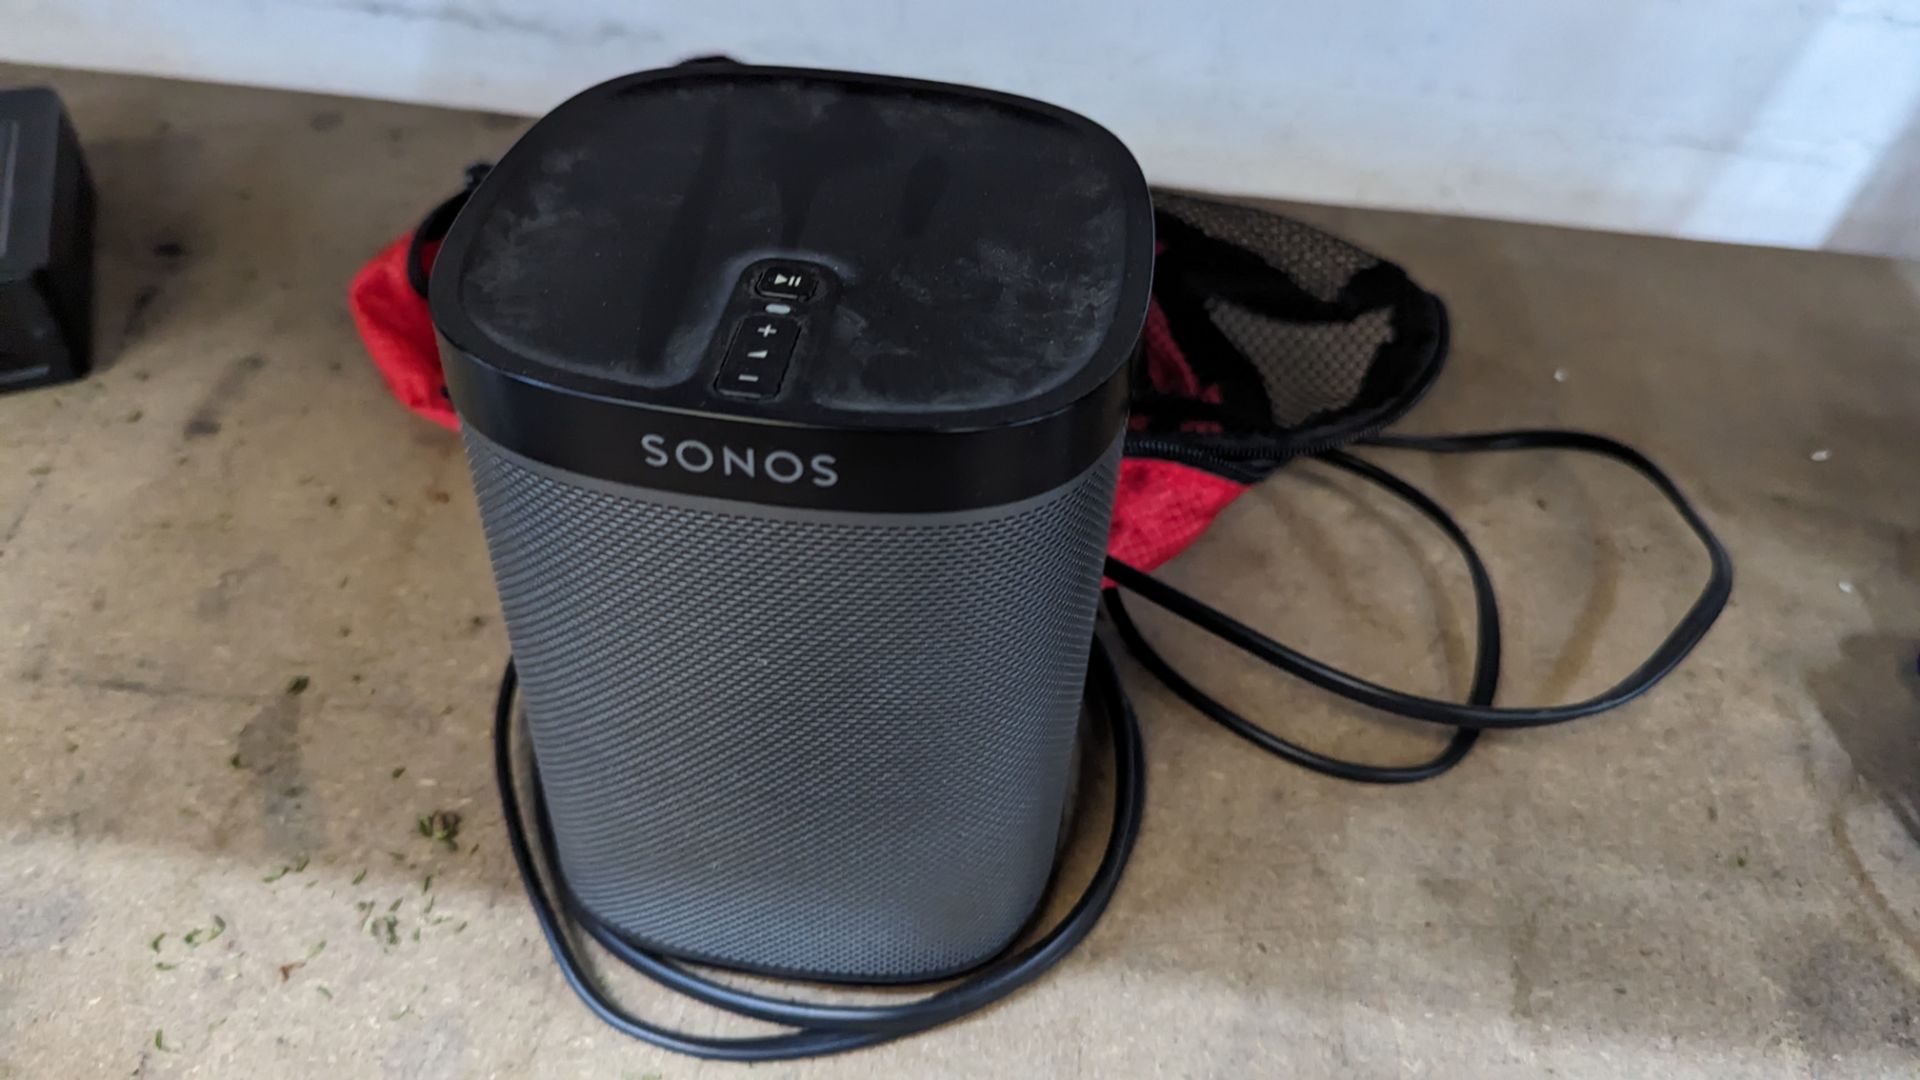 Sonos model Play 1 portable speaker plus Veho mini power bank speaker - Image 5 of 9